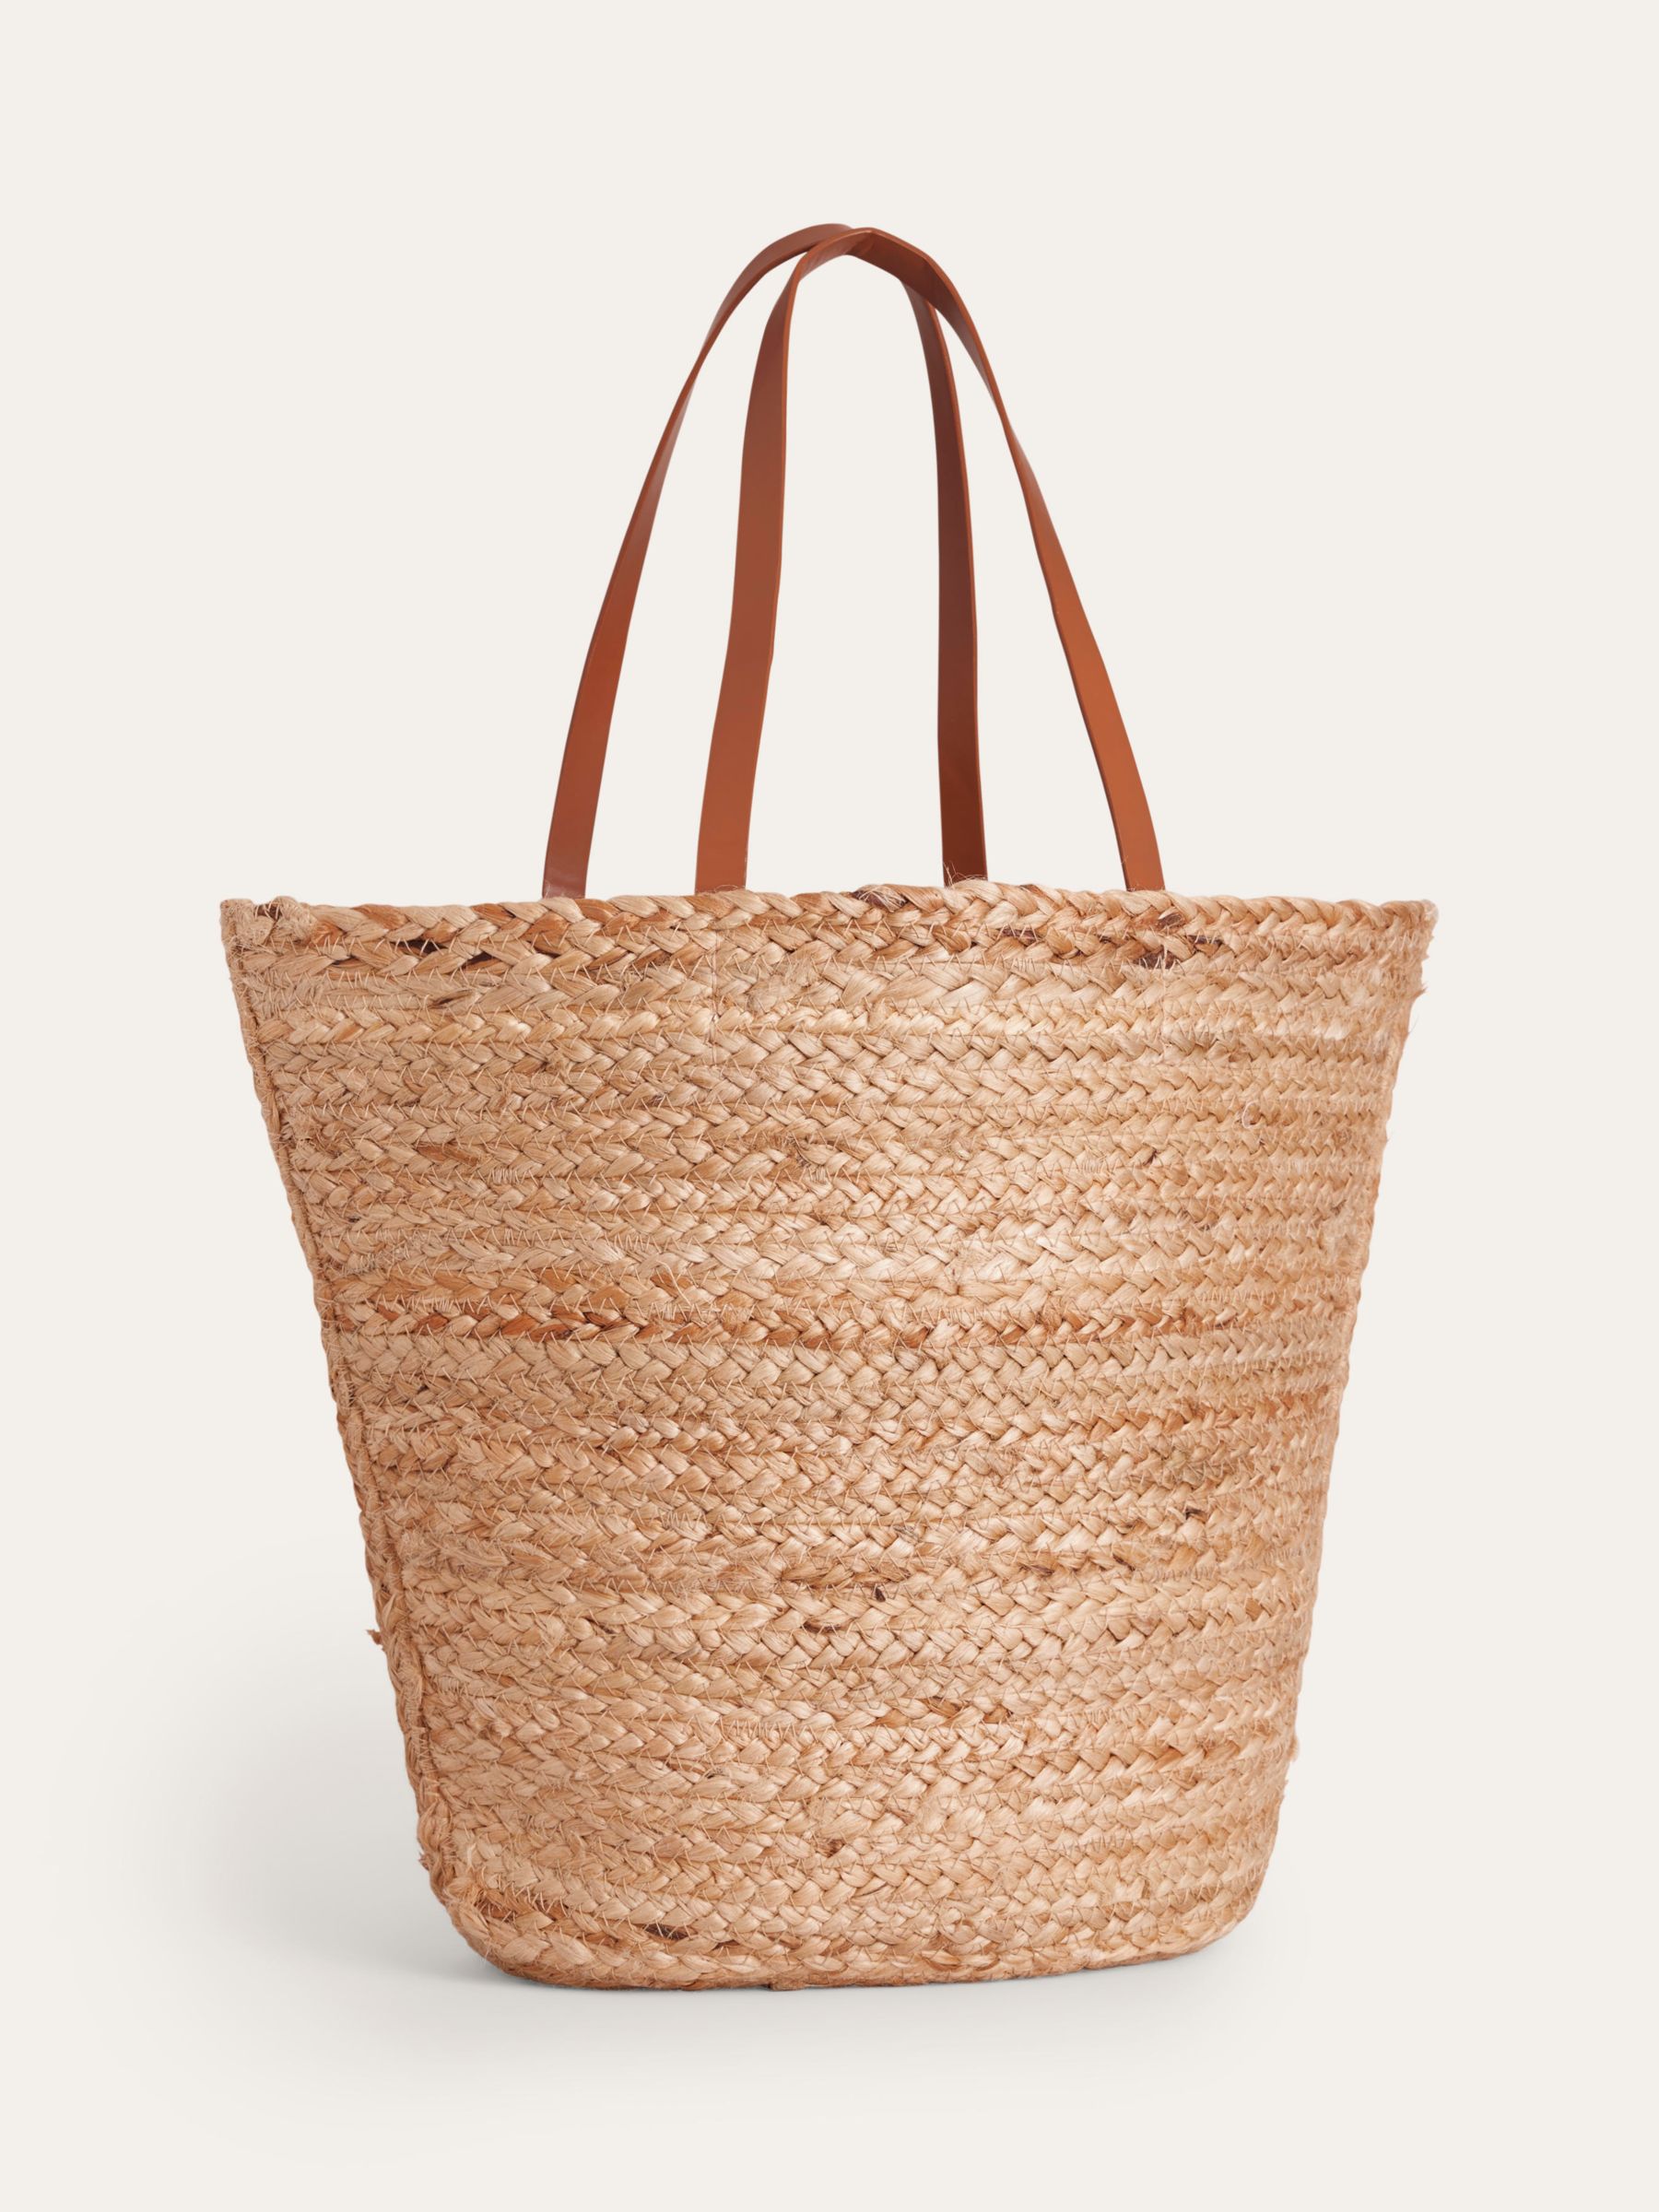 Boden Embroidered Raffia Basket Bag, Natural/Multi, One Size